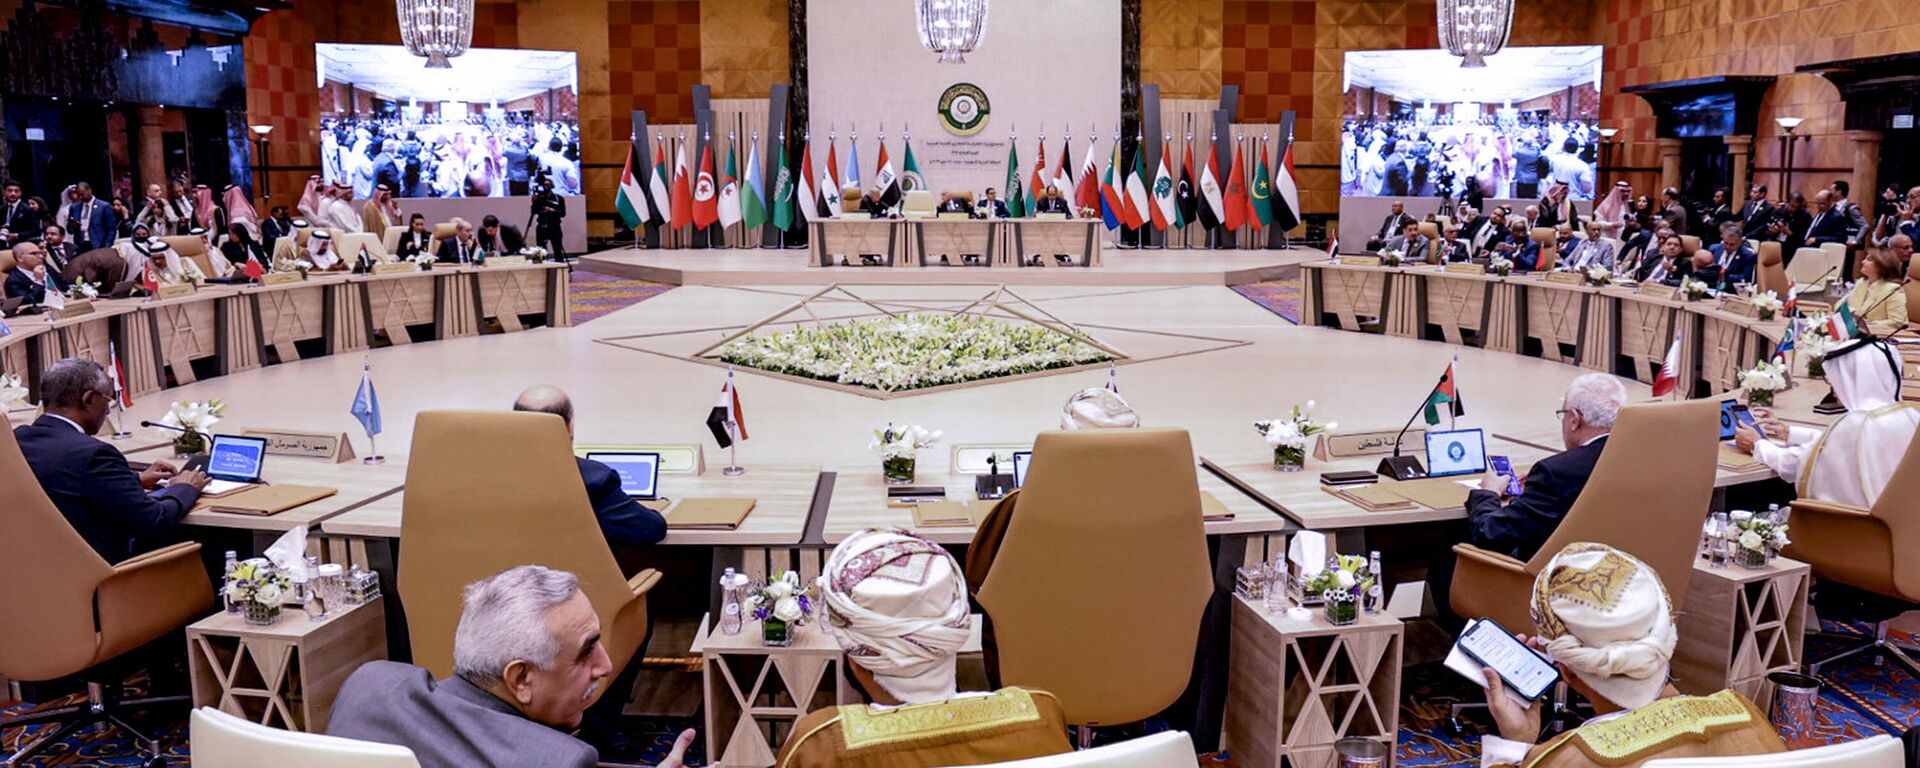 A 32ª cúpula da Liga Árabe começa em Jidá, na Arábia Saudita, na sexta-feira (19) - Sputnik Brasil, 1920, 19.05.2023